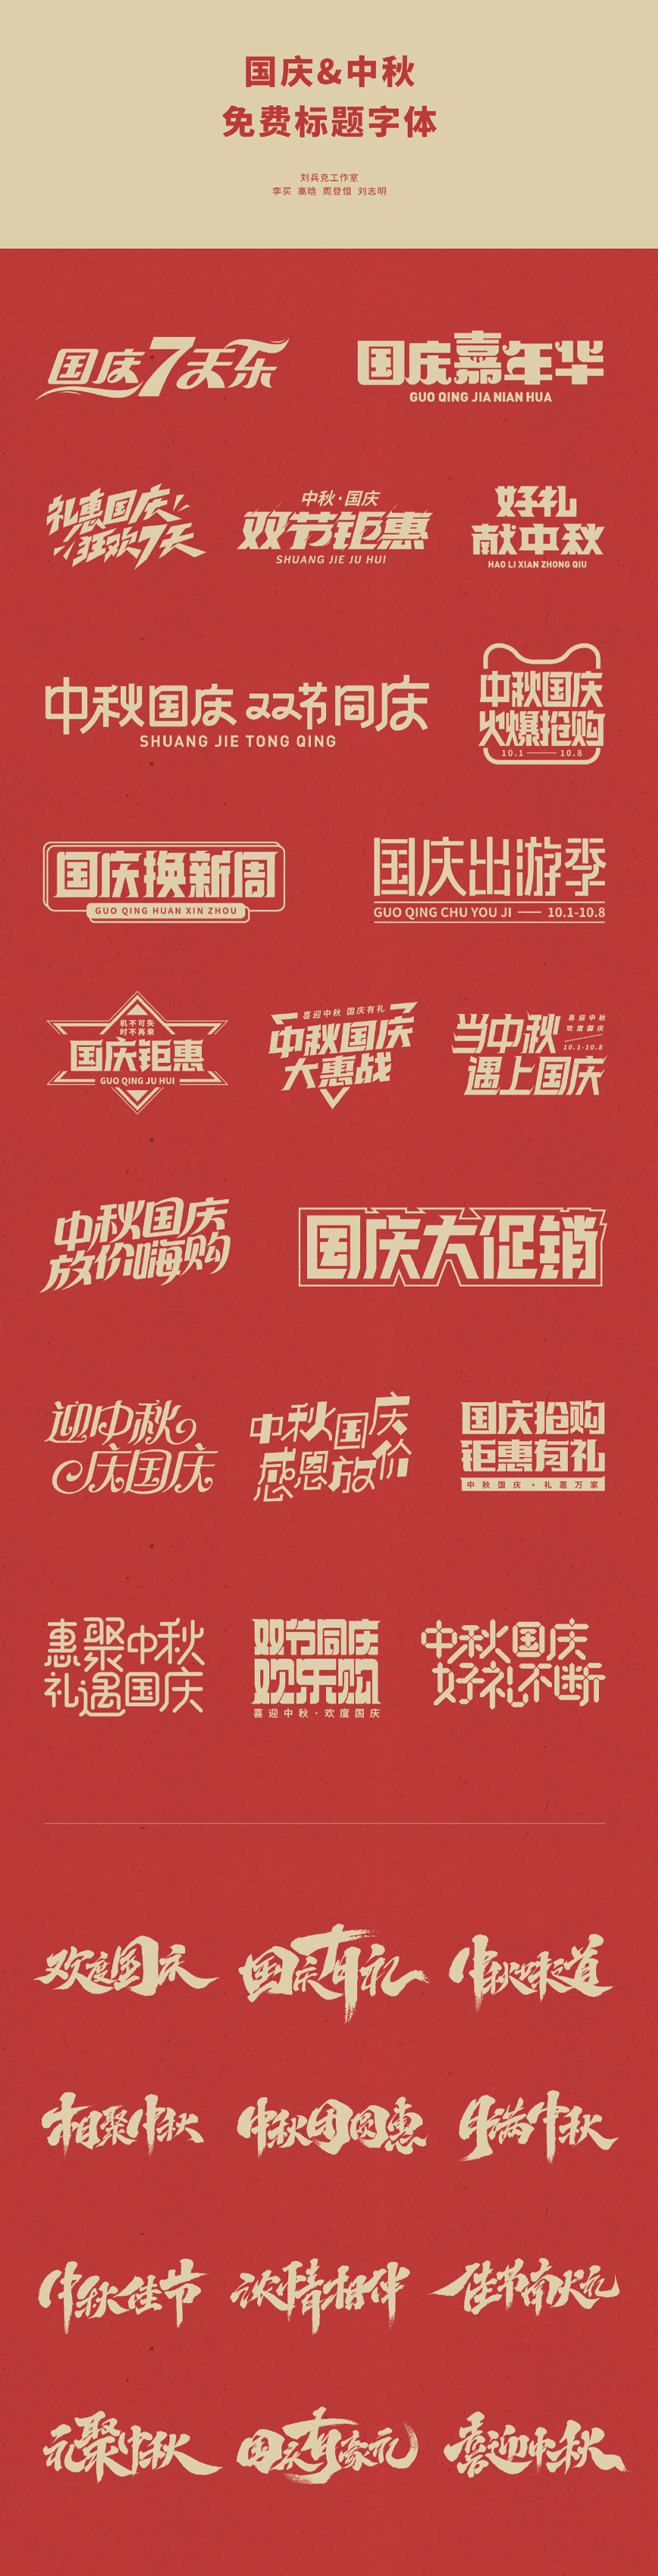 免费字体下载！国庆节中秋节免费字体礼包 – 刘兵克工作室